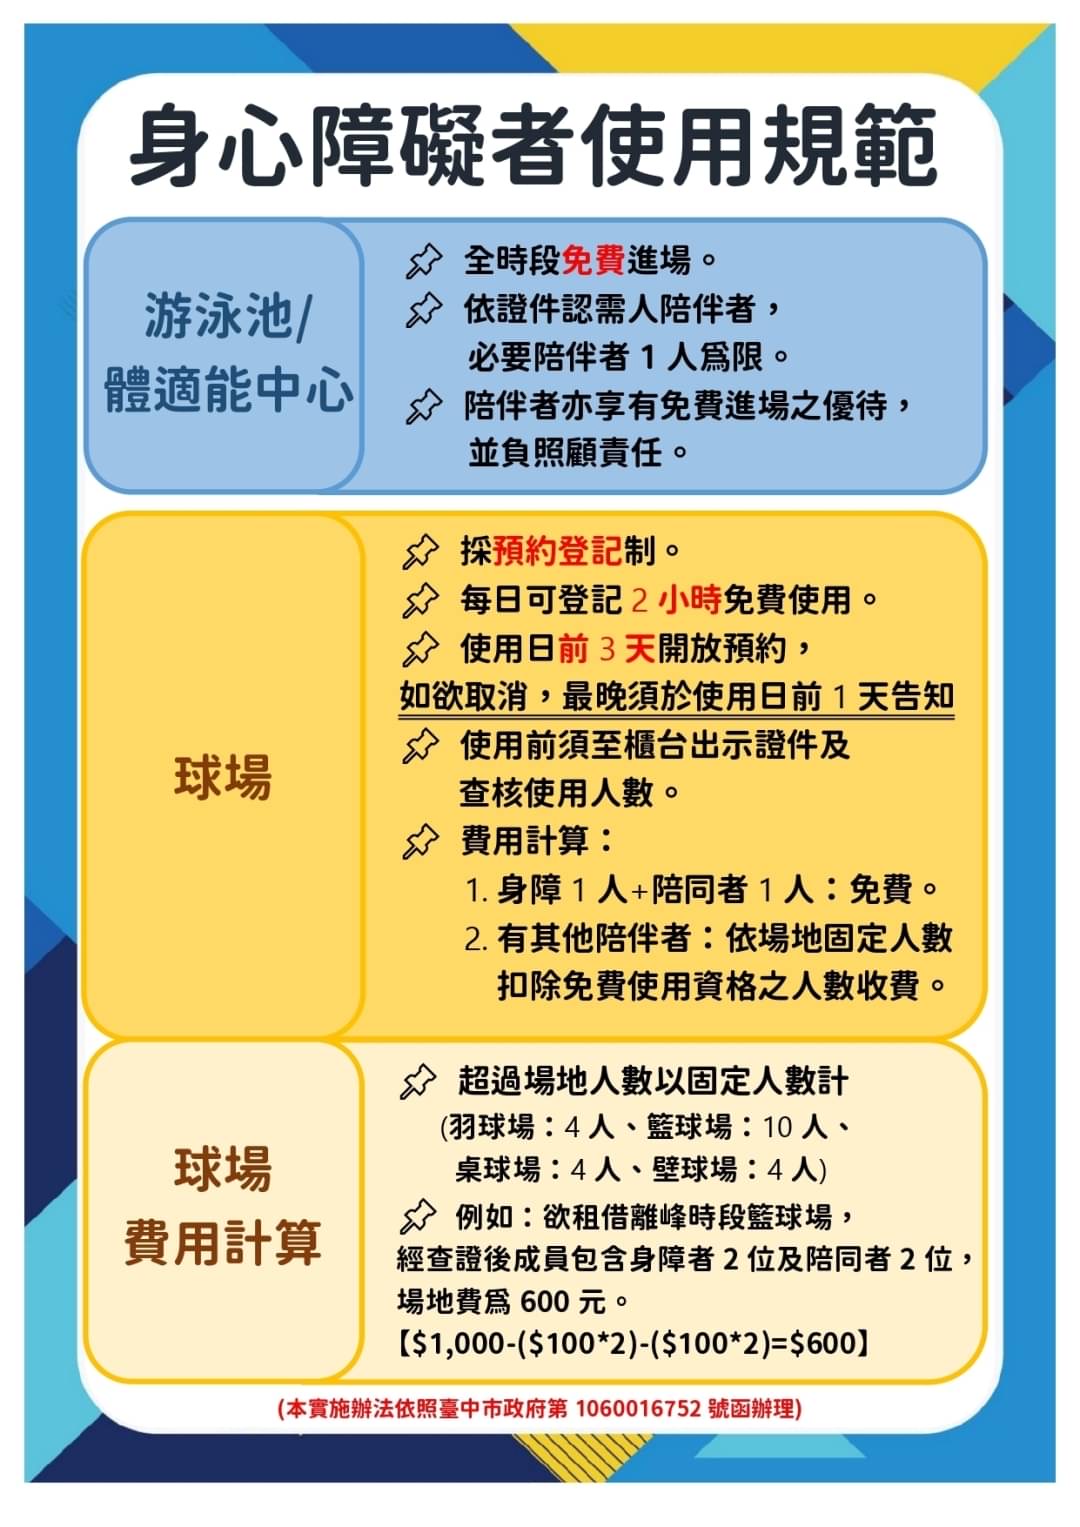 最新消息縮圖（詳細說明請點選下方連結至最新消息內容頁）@長春國民運動中心